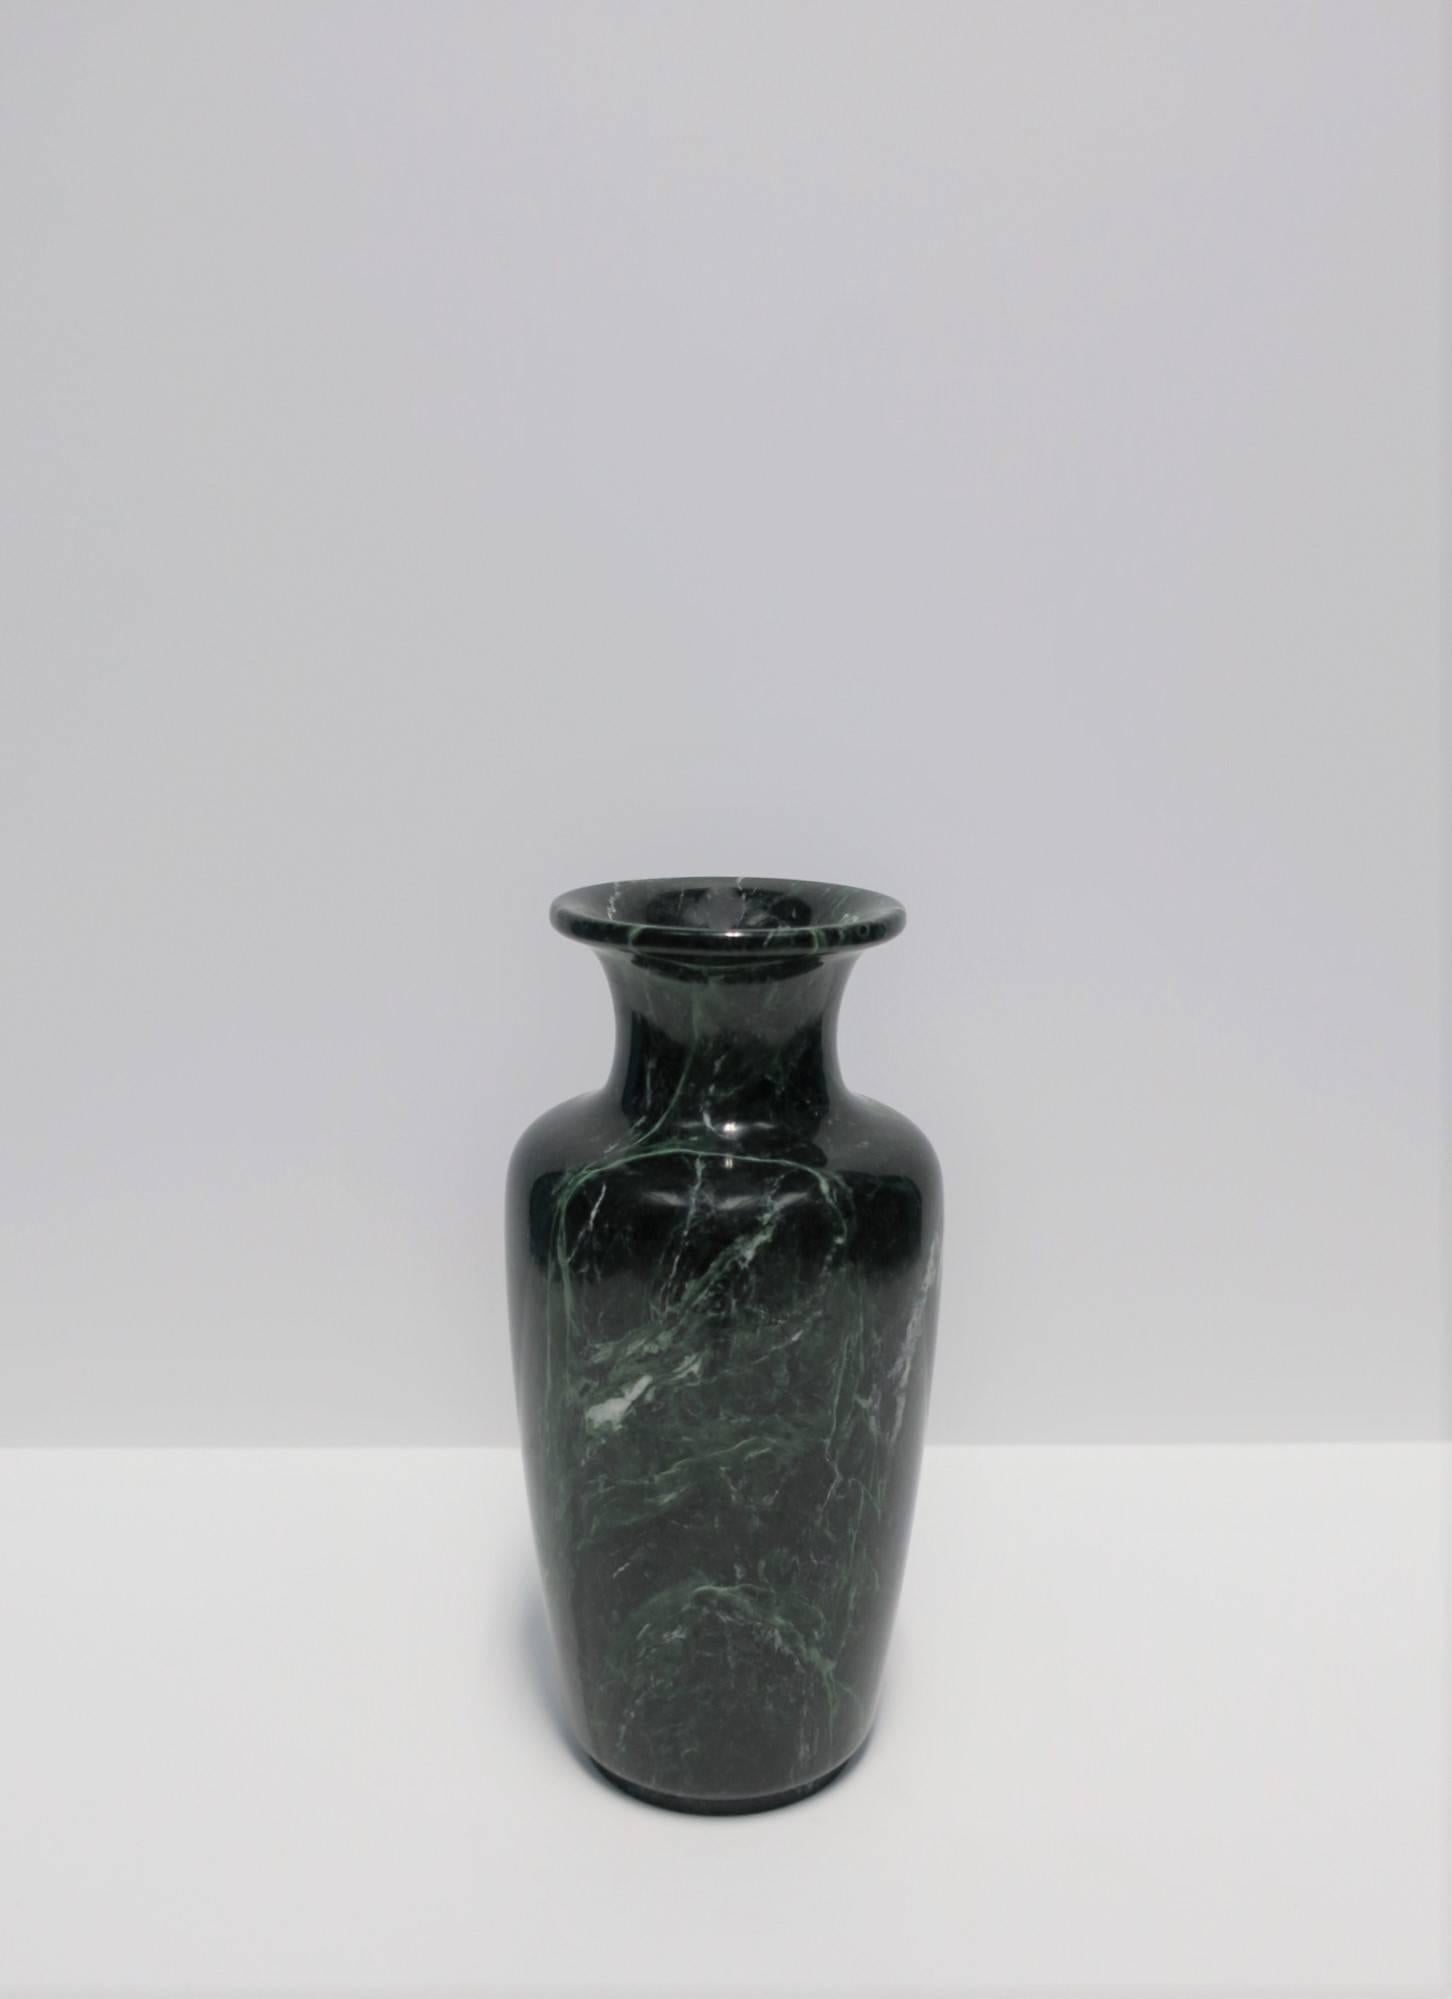 Polished Postmodern Dark Green Marble Urn Form Vase